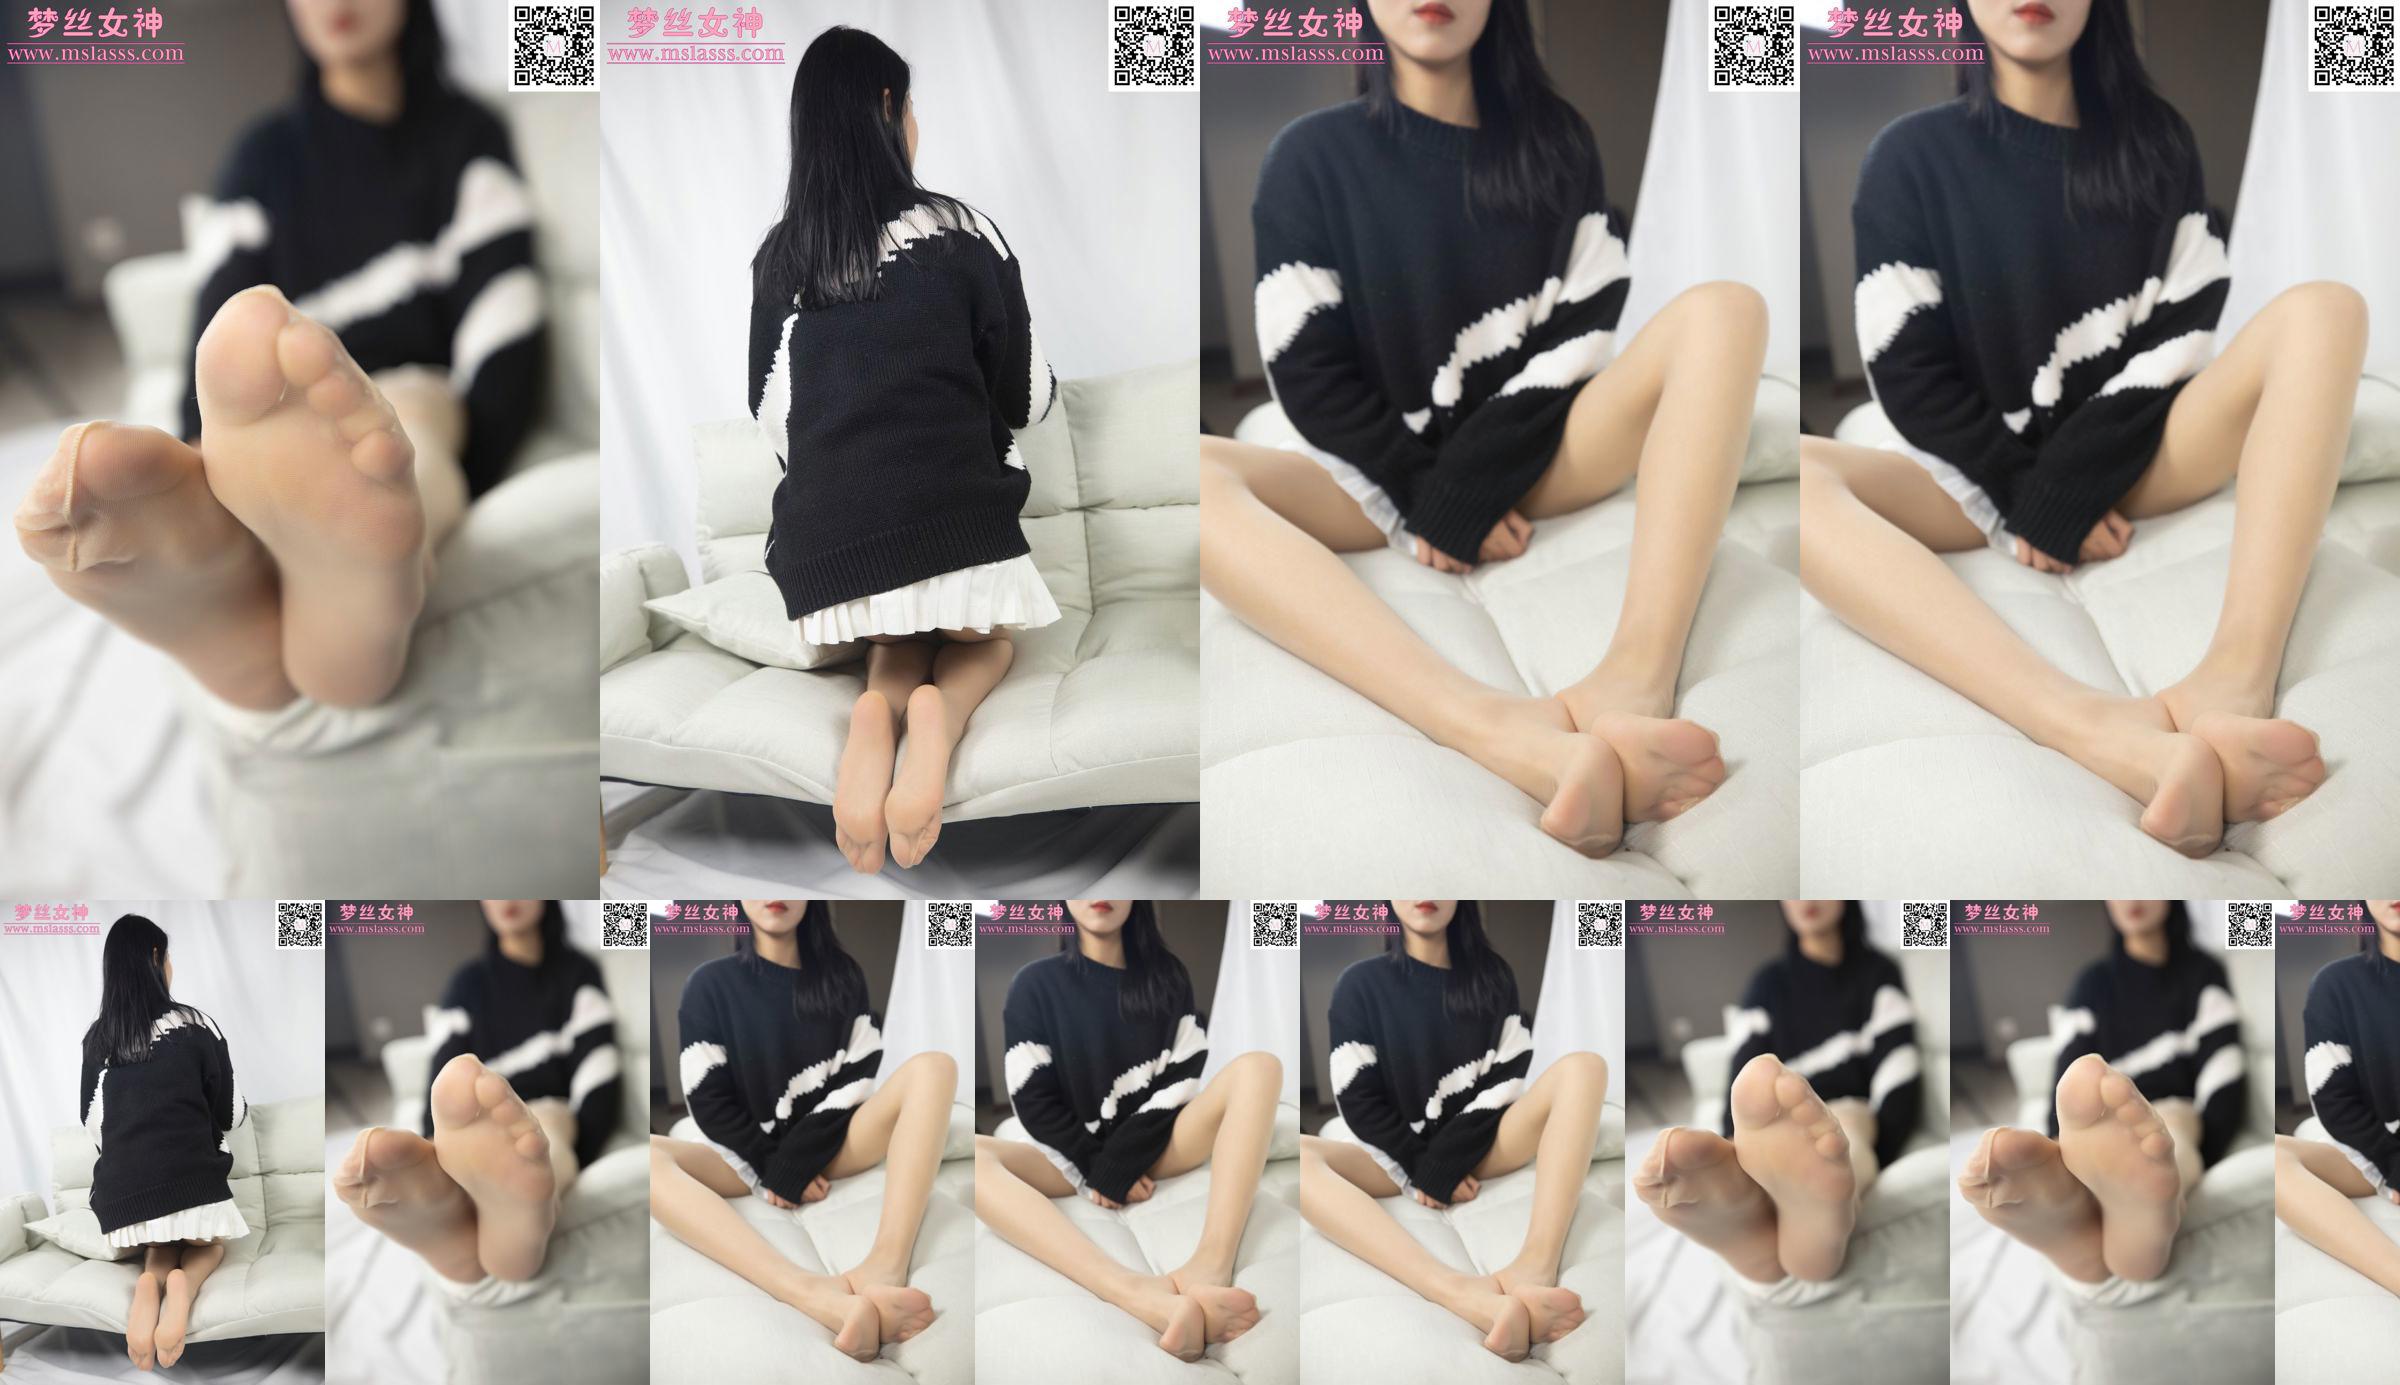 [꿈의 여신 MSLASS] Xiaomu의 스웨터는 그녀의 긴 다리를 막을 수 없습니다 No.35821d 페이지 1